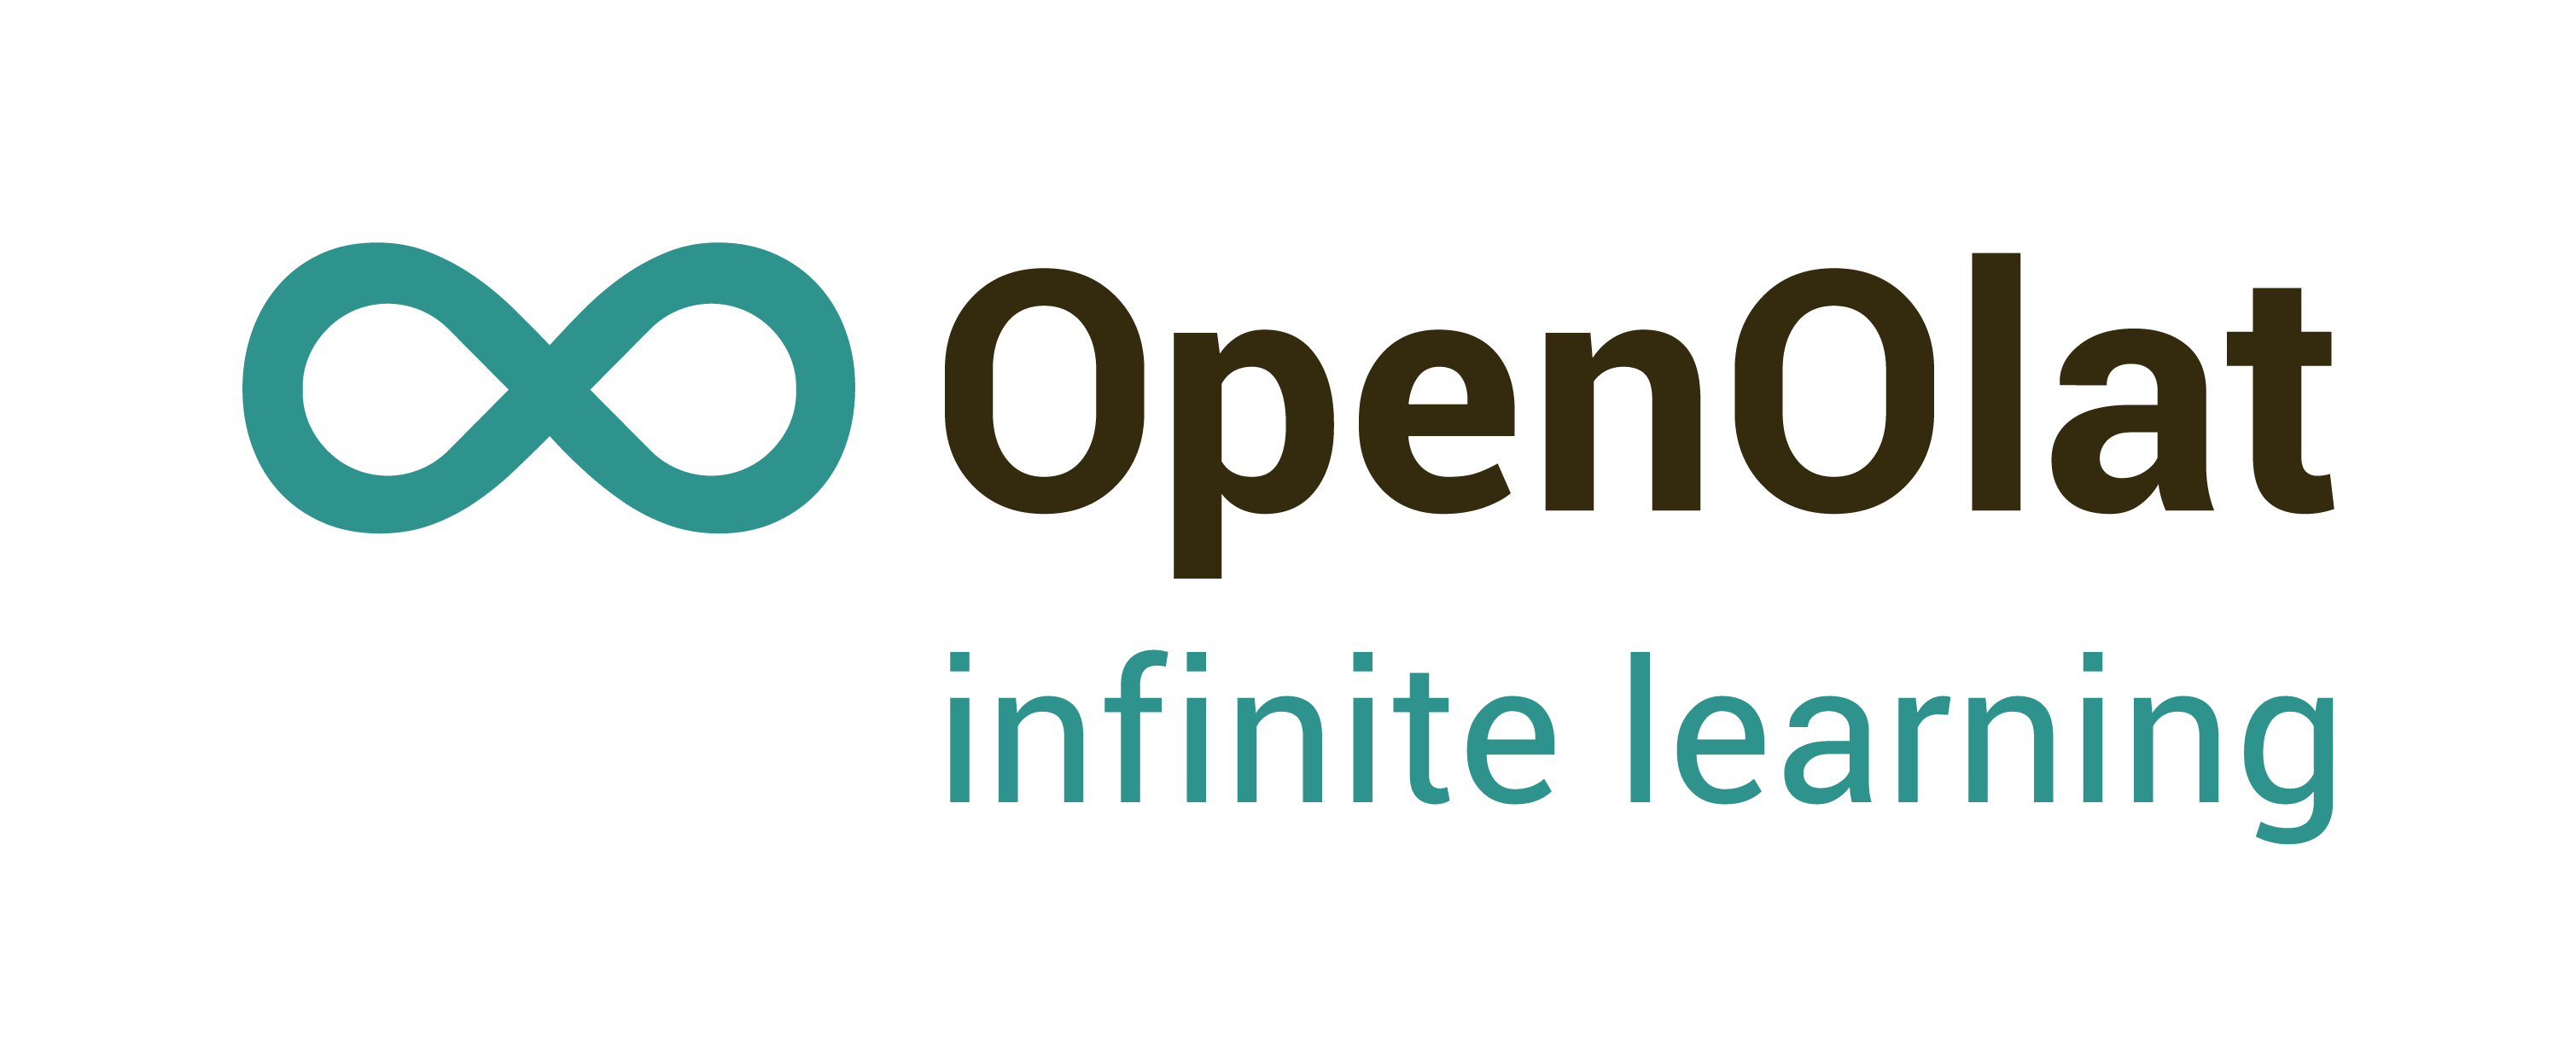 About OpenOlat